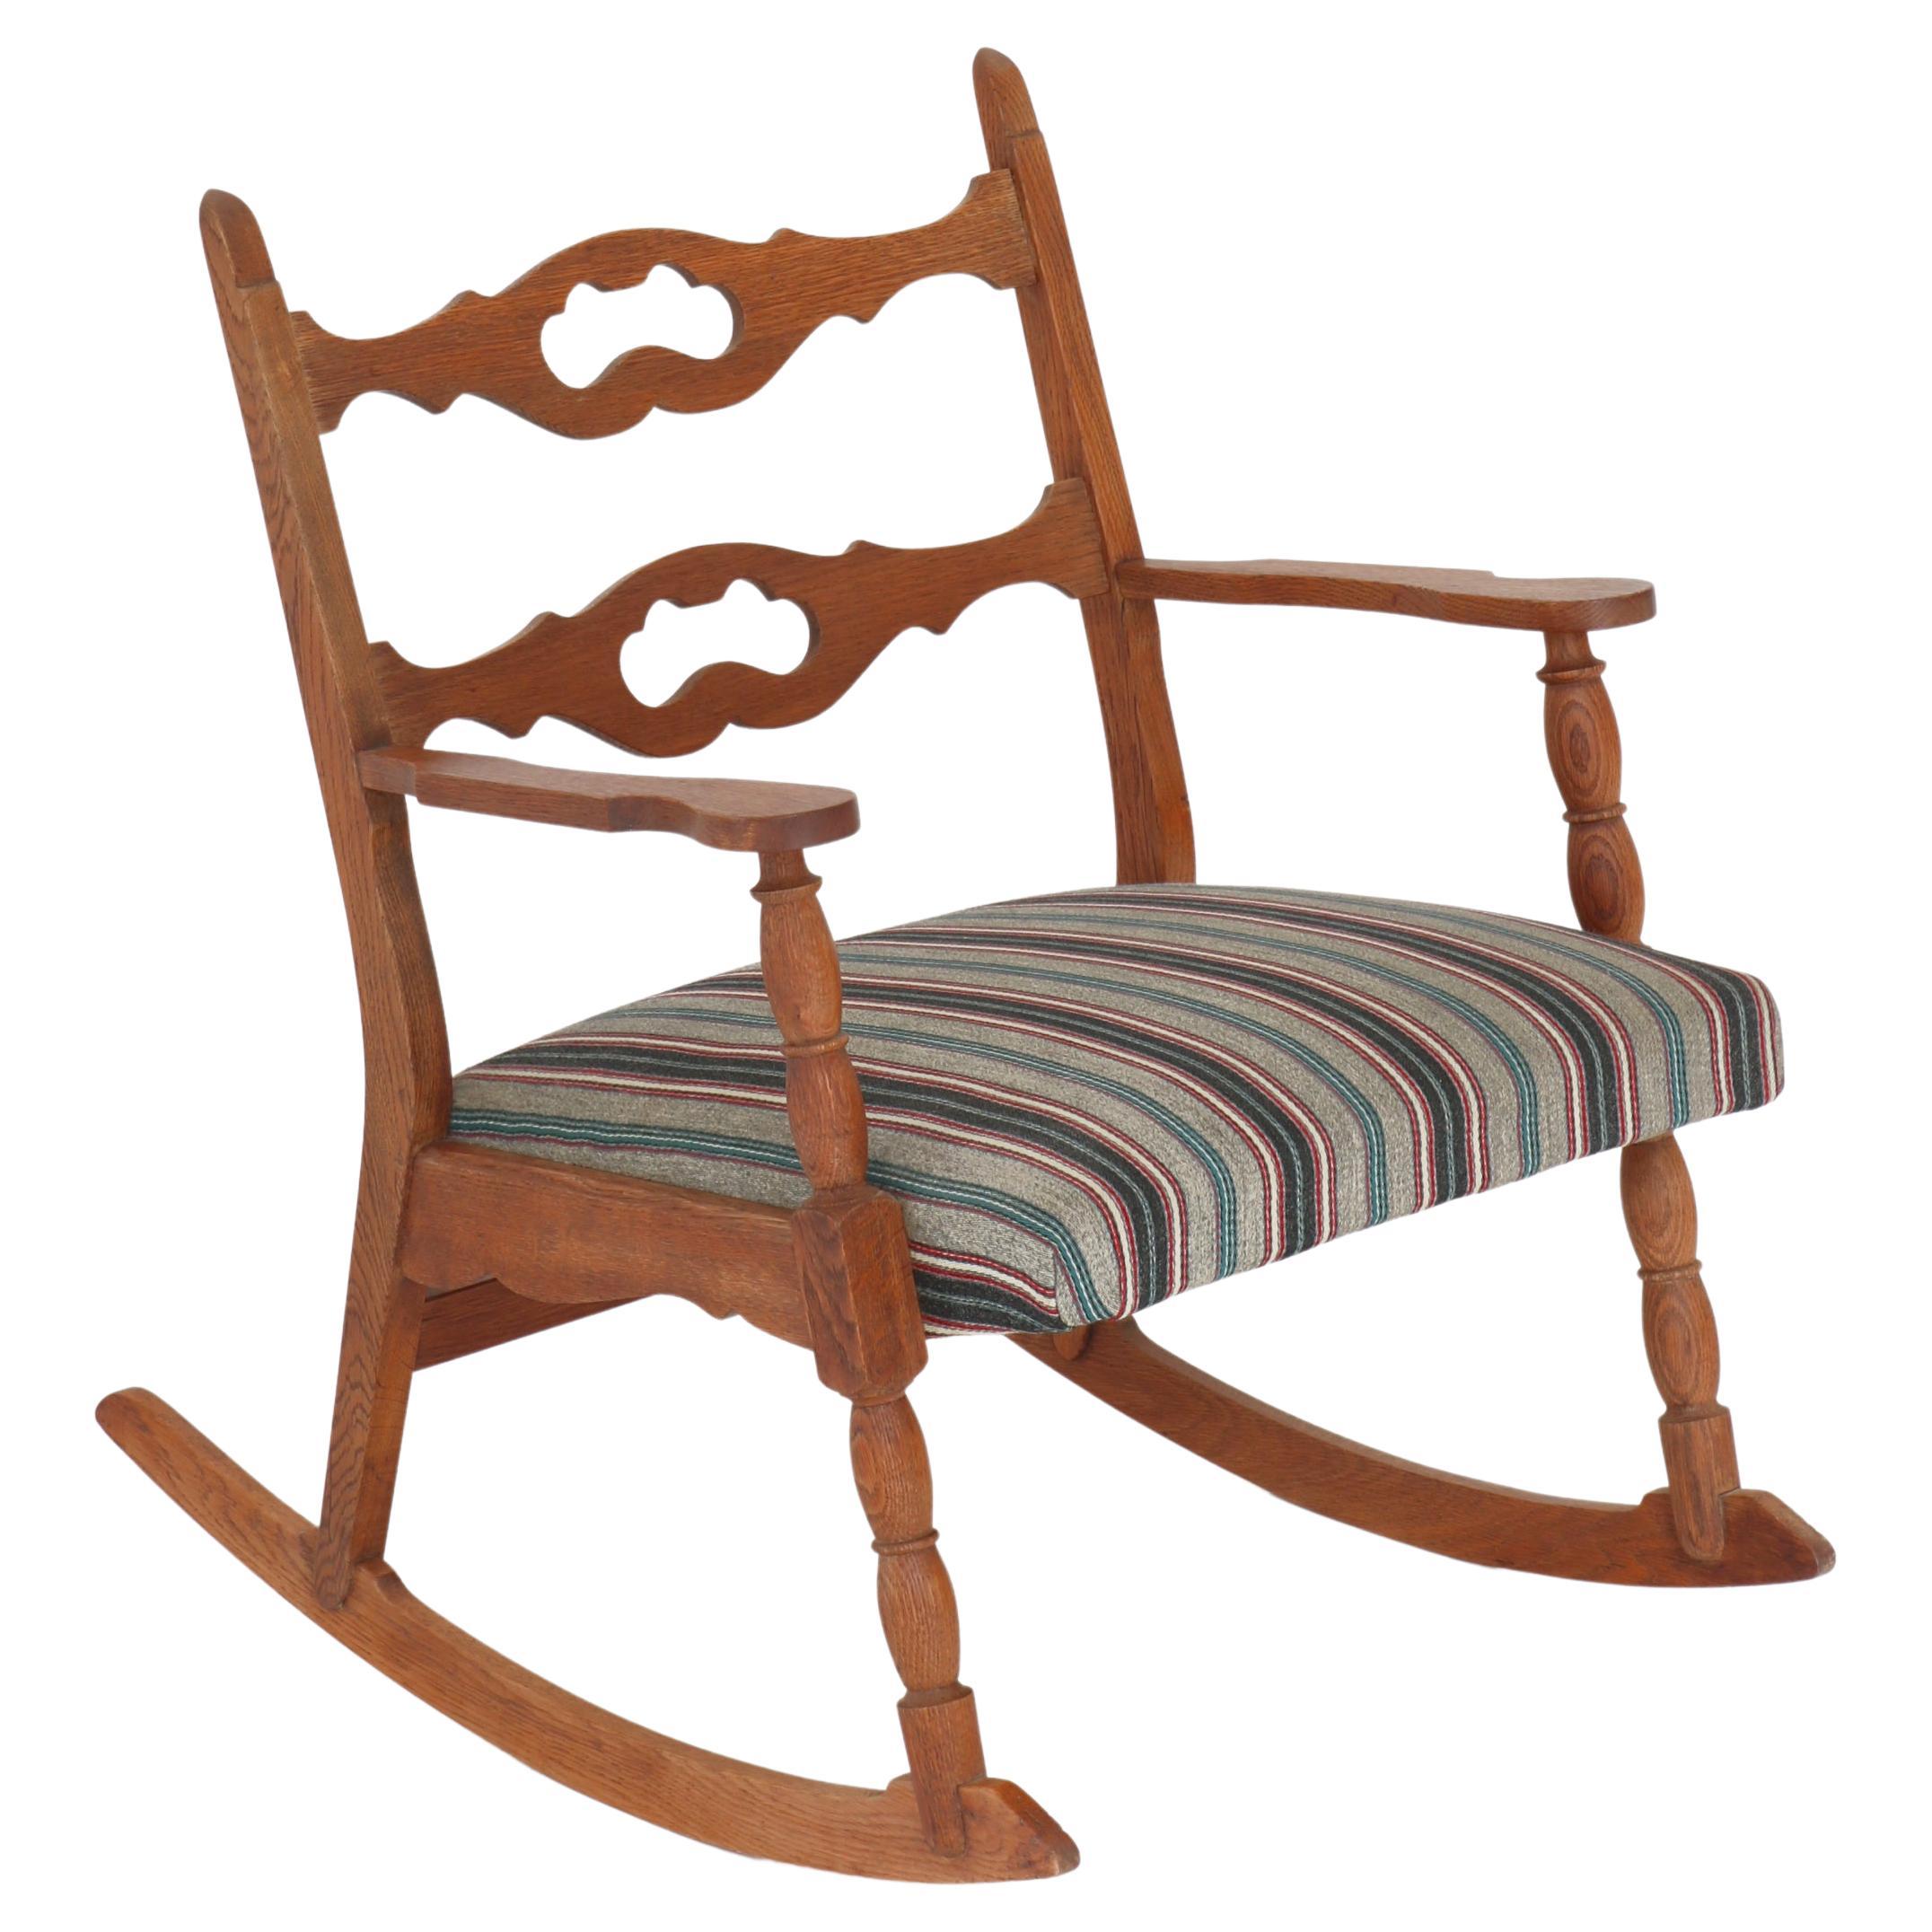 1950s Rocking Chair in Oak & Wool Fabric by Henry Kjærnulff, Danish Modern For Sale